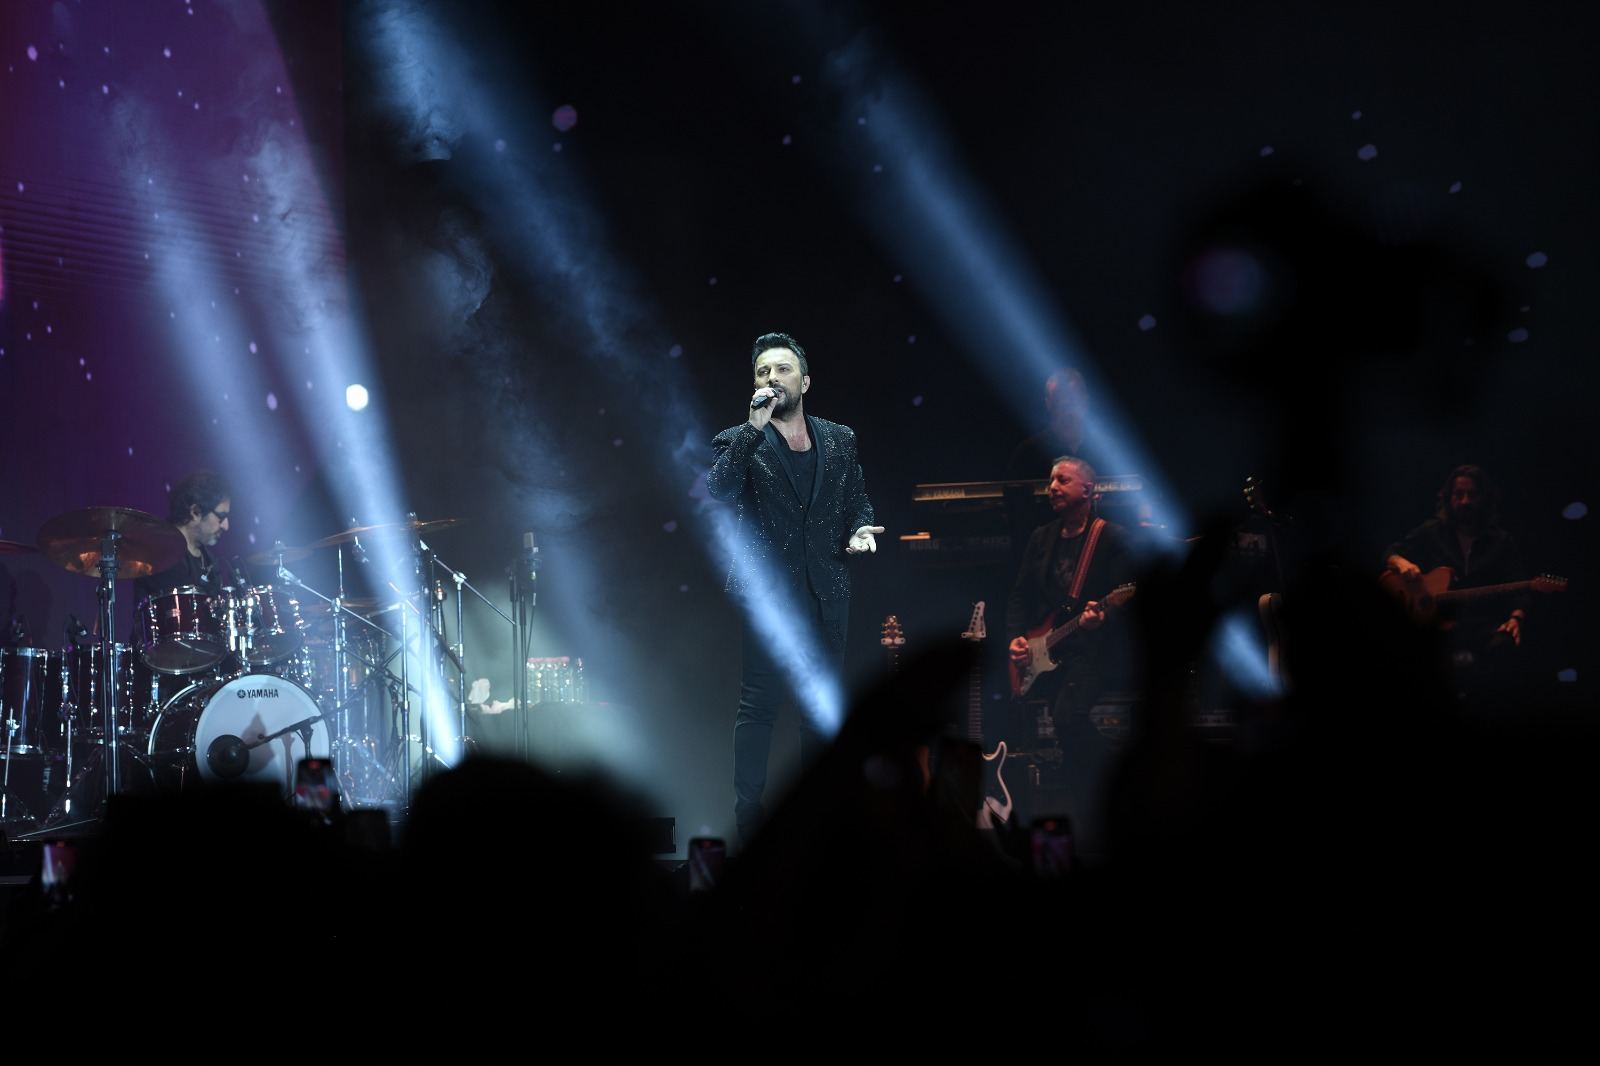 Фейерверк эмоций и буря впечатлений: Таркан выступил с концертом в Баку (ФОТО)